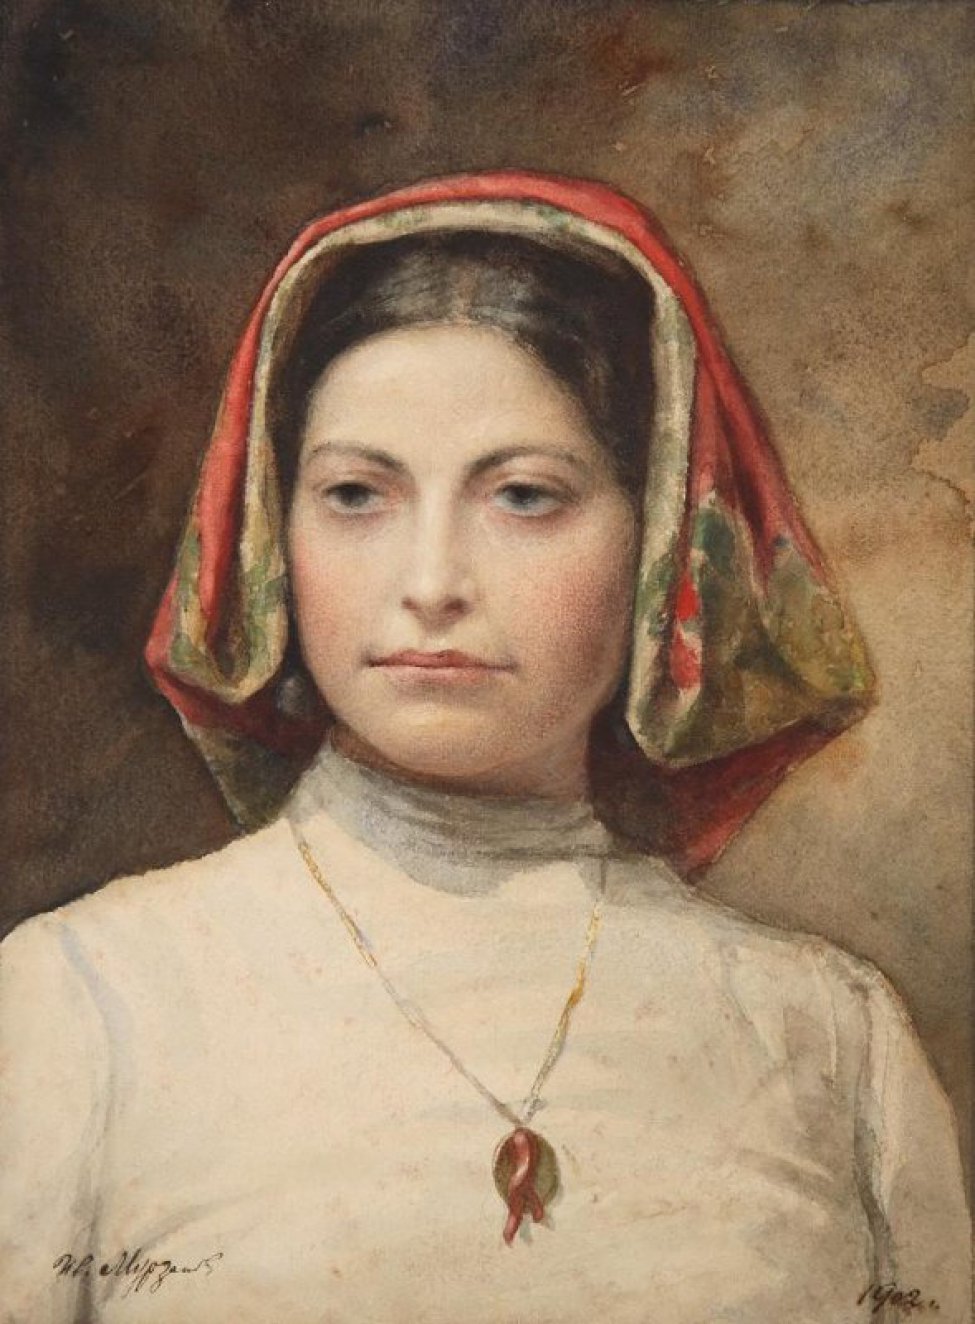 Погрудное изображение молодой женщины в фас в в белой с глухим воротником кофте. На голове красный платок, на груди медальон.